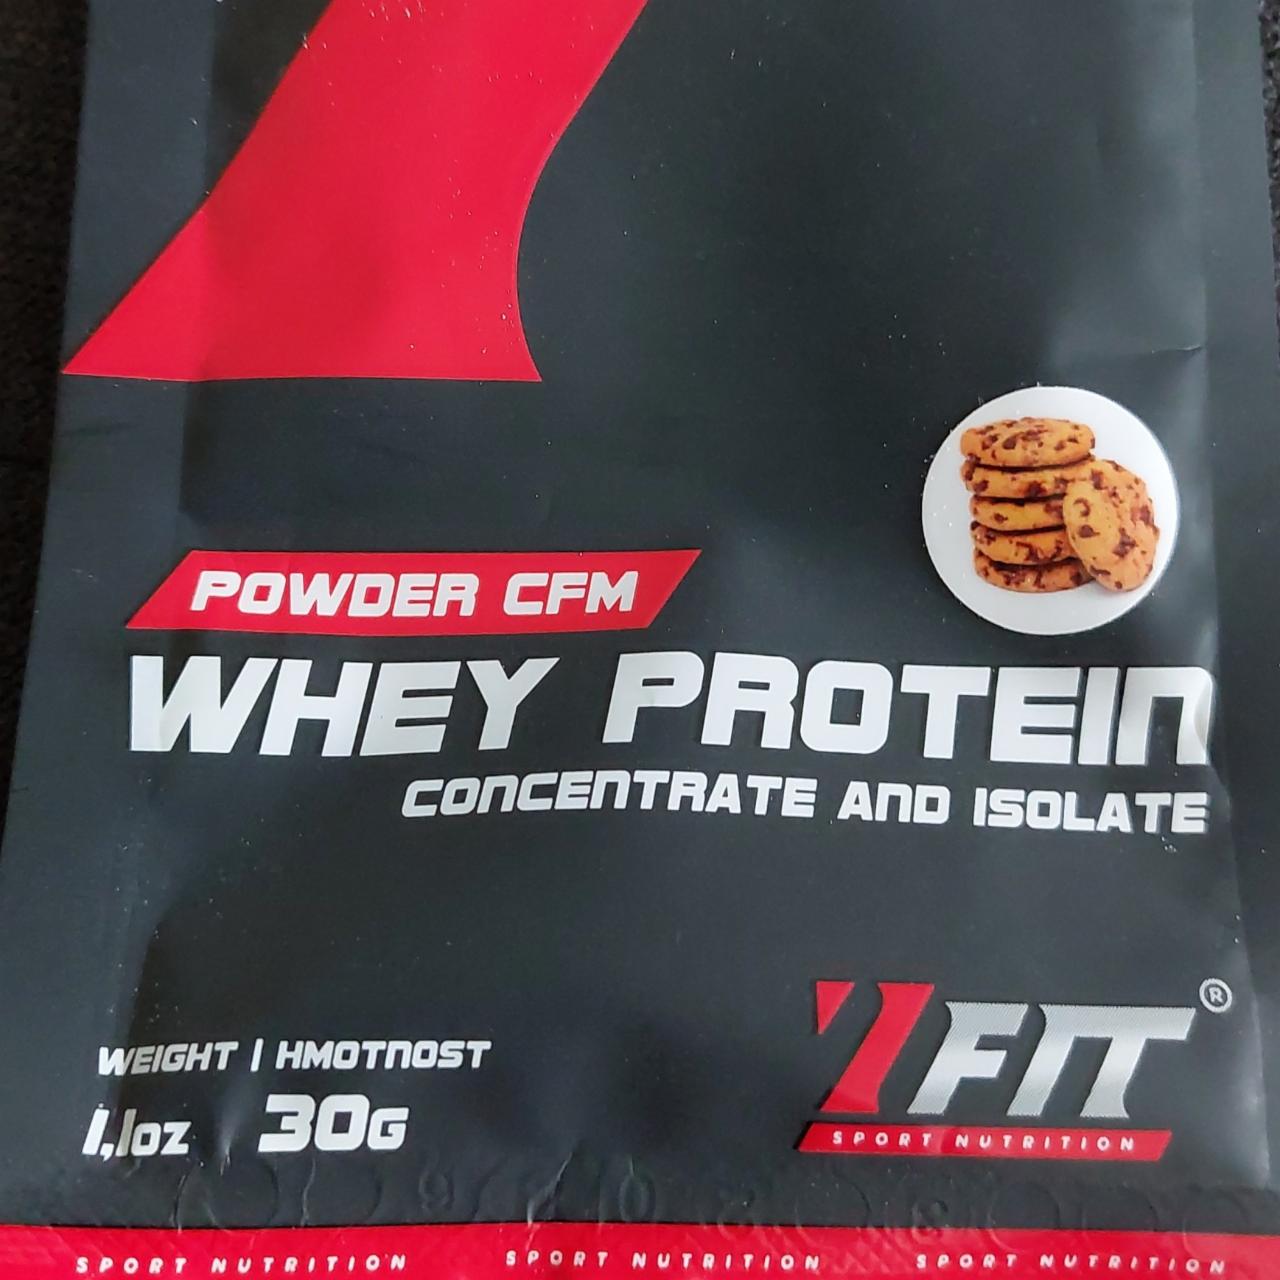 Fotografie - Powder CFM Whey Protein Cookie 7Fit Sport Nutrition